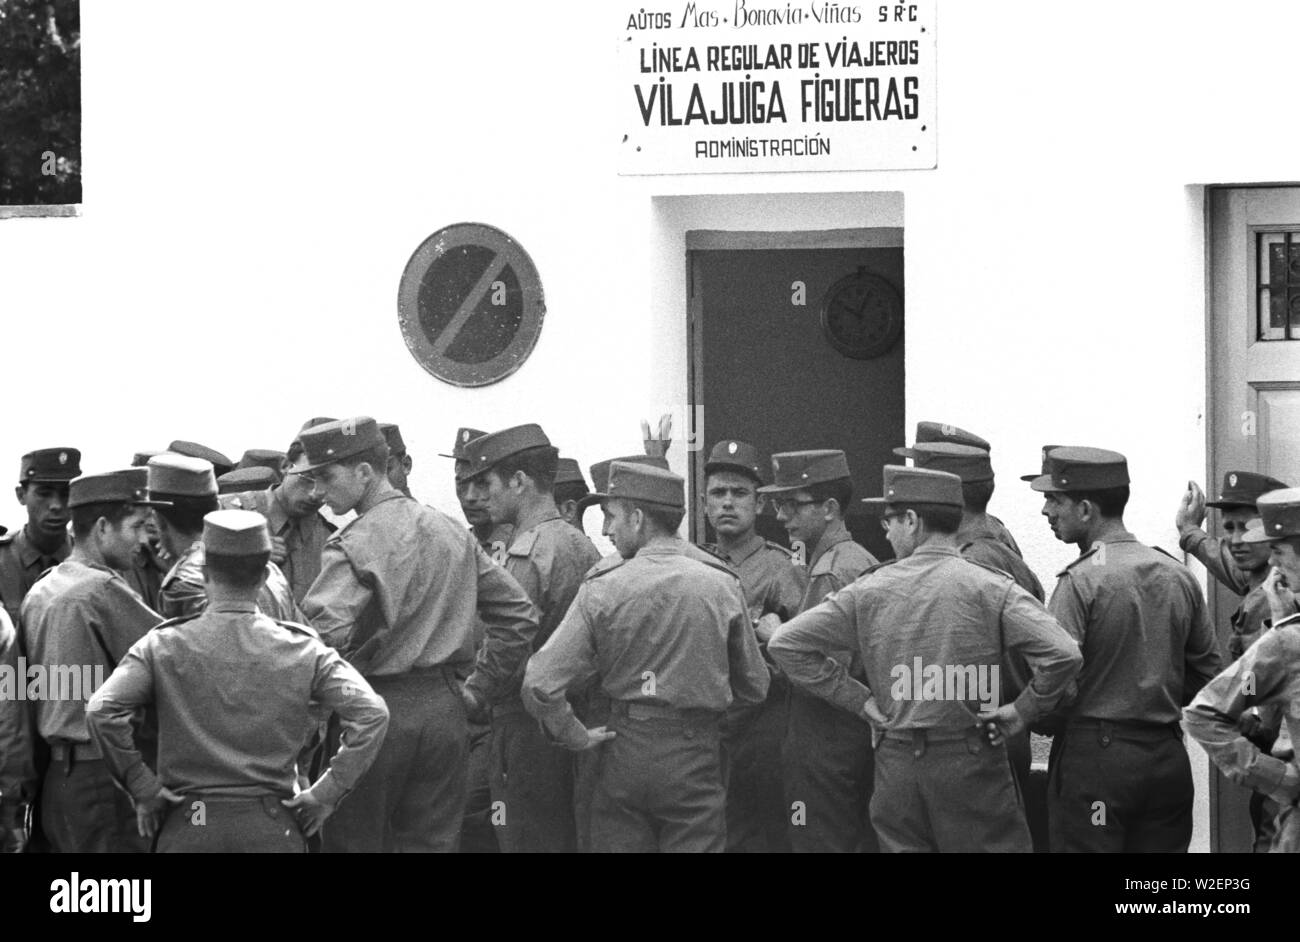 Ejército, servicio militar. Estación de Vilajuïga. Años 70. Stock Photo